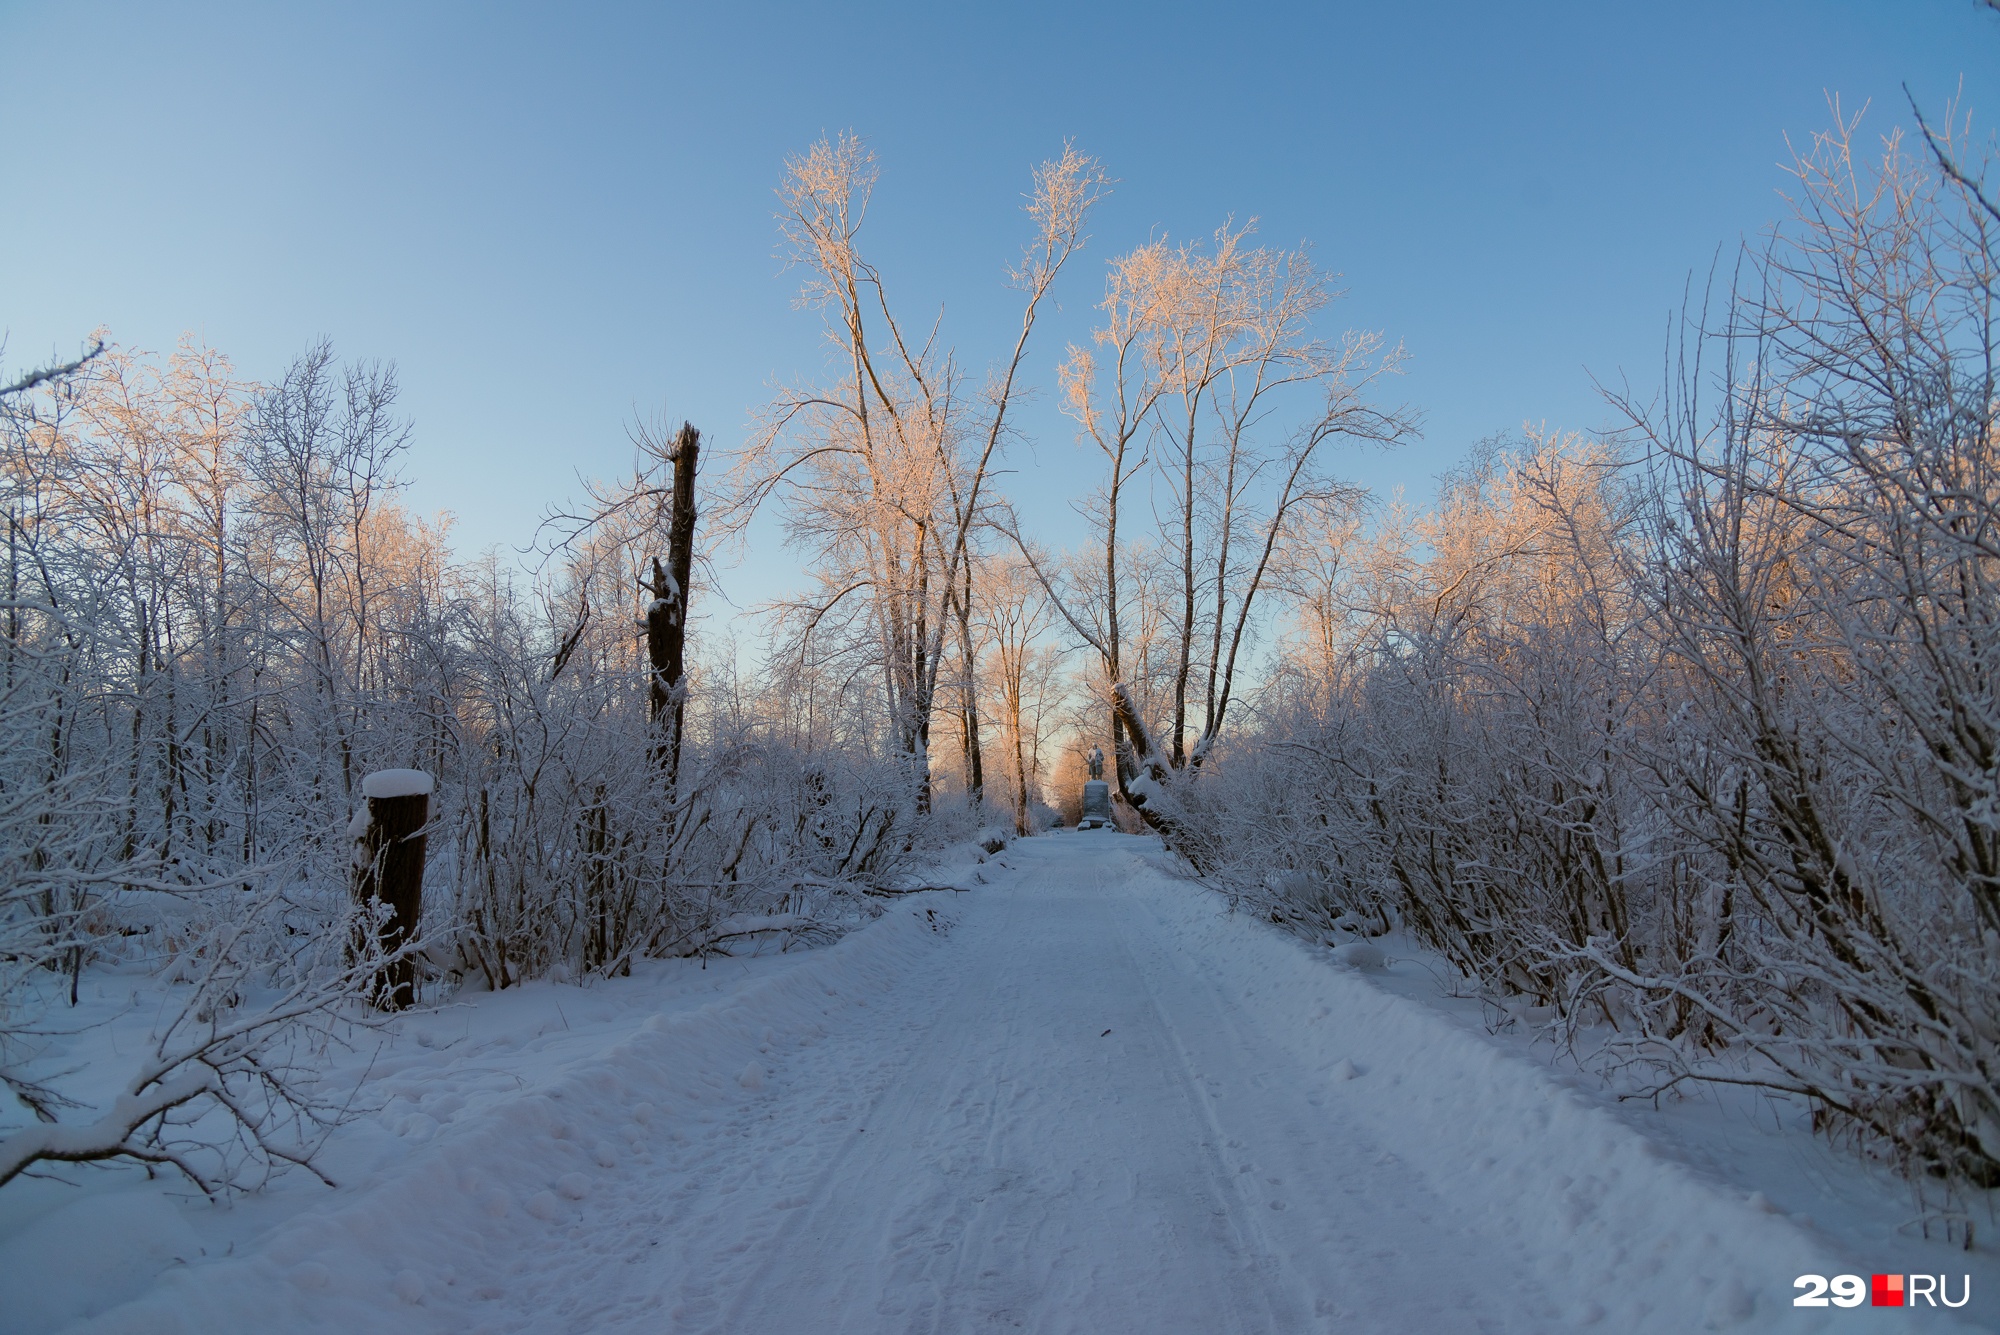 Дорога к Ленину почищена. А вот парк после урагана выглядит неважно даже под снегом